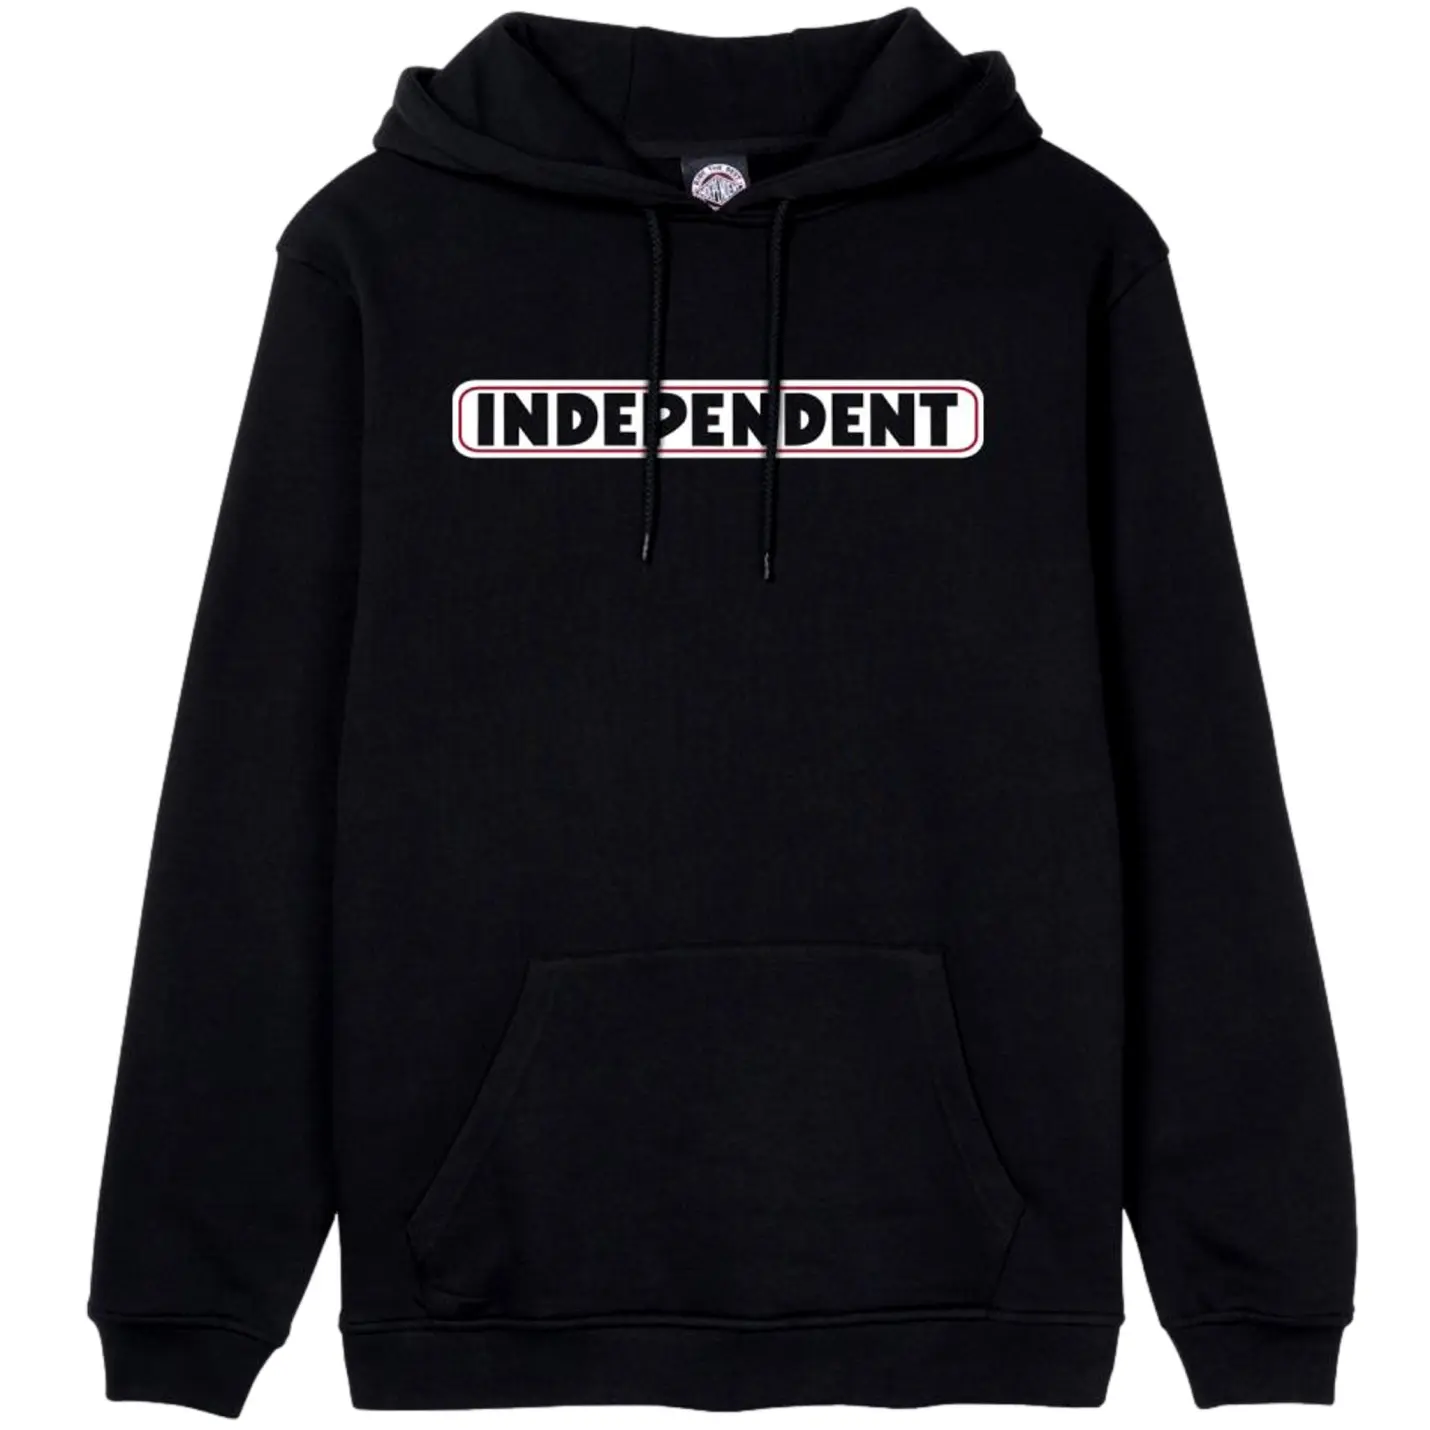 Independent hood bar logo black